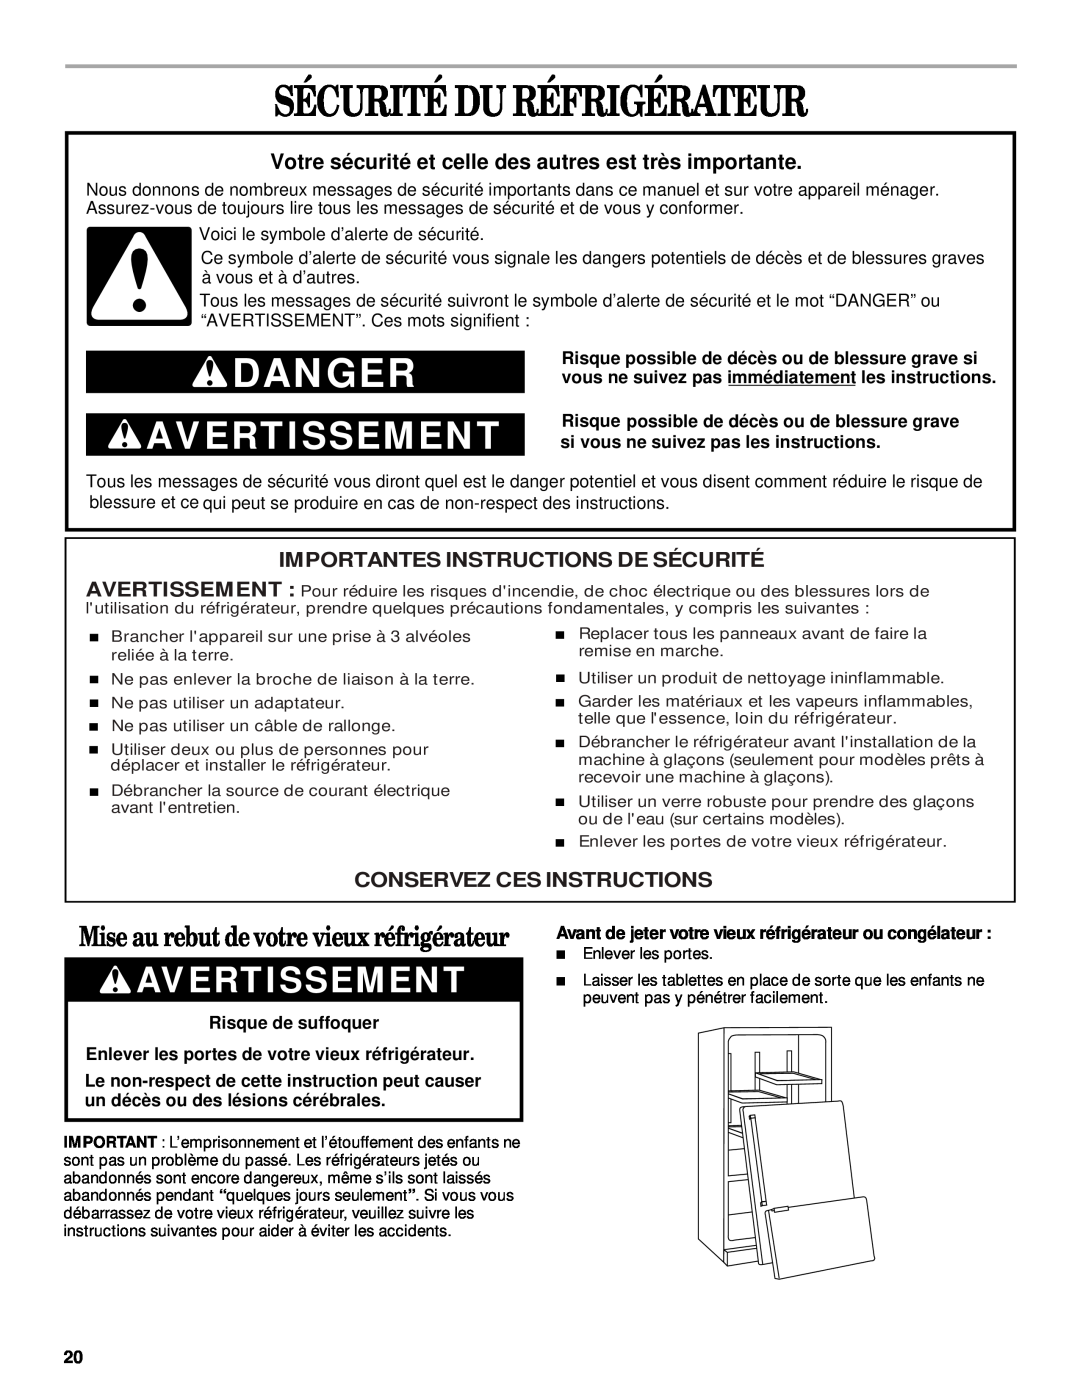 Whirlpool 2300253 manual Sécurité Du Réfrigérateur, Avertissement, Mise au rebut de votre vieux réfrigérateur, Danger 